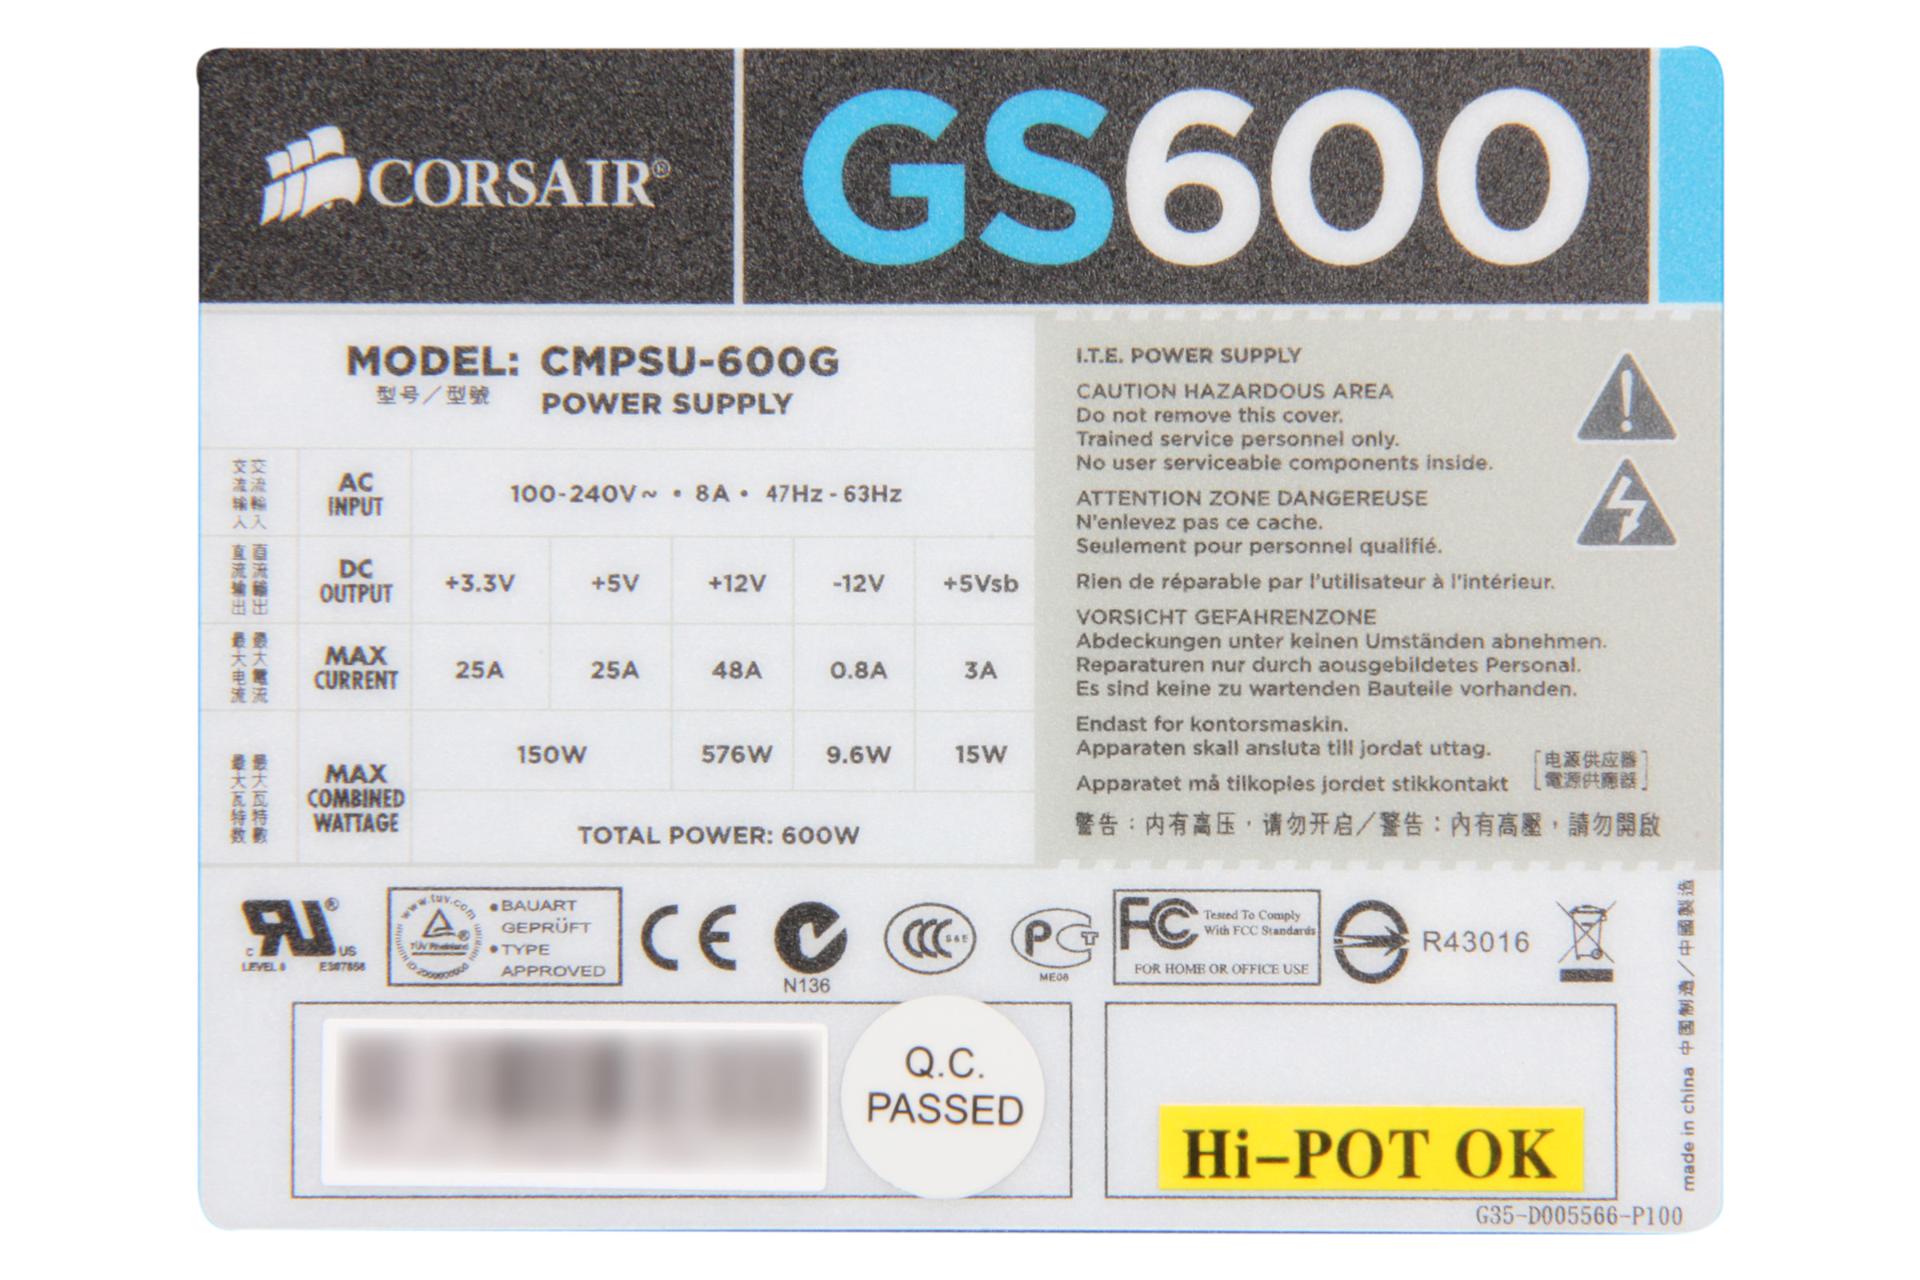 برچسب توضیحات پاور کامپیوتر کورسیر GS600 Bronze CMPSU-600G با توان 600 وات